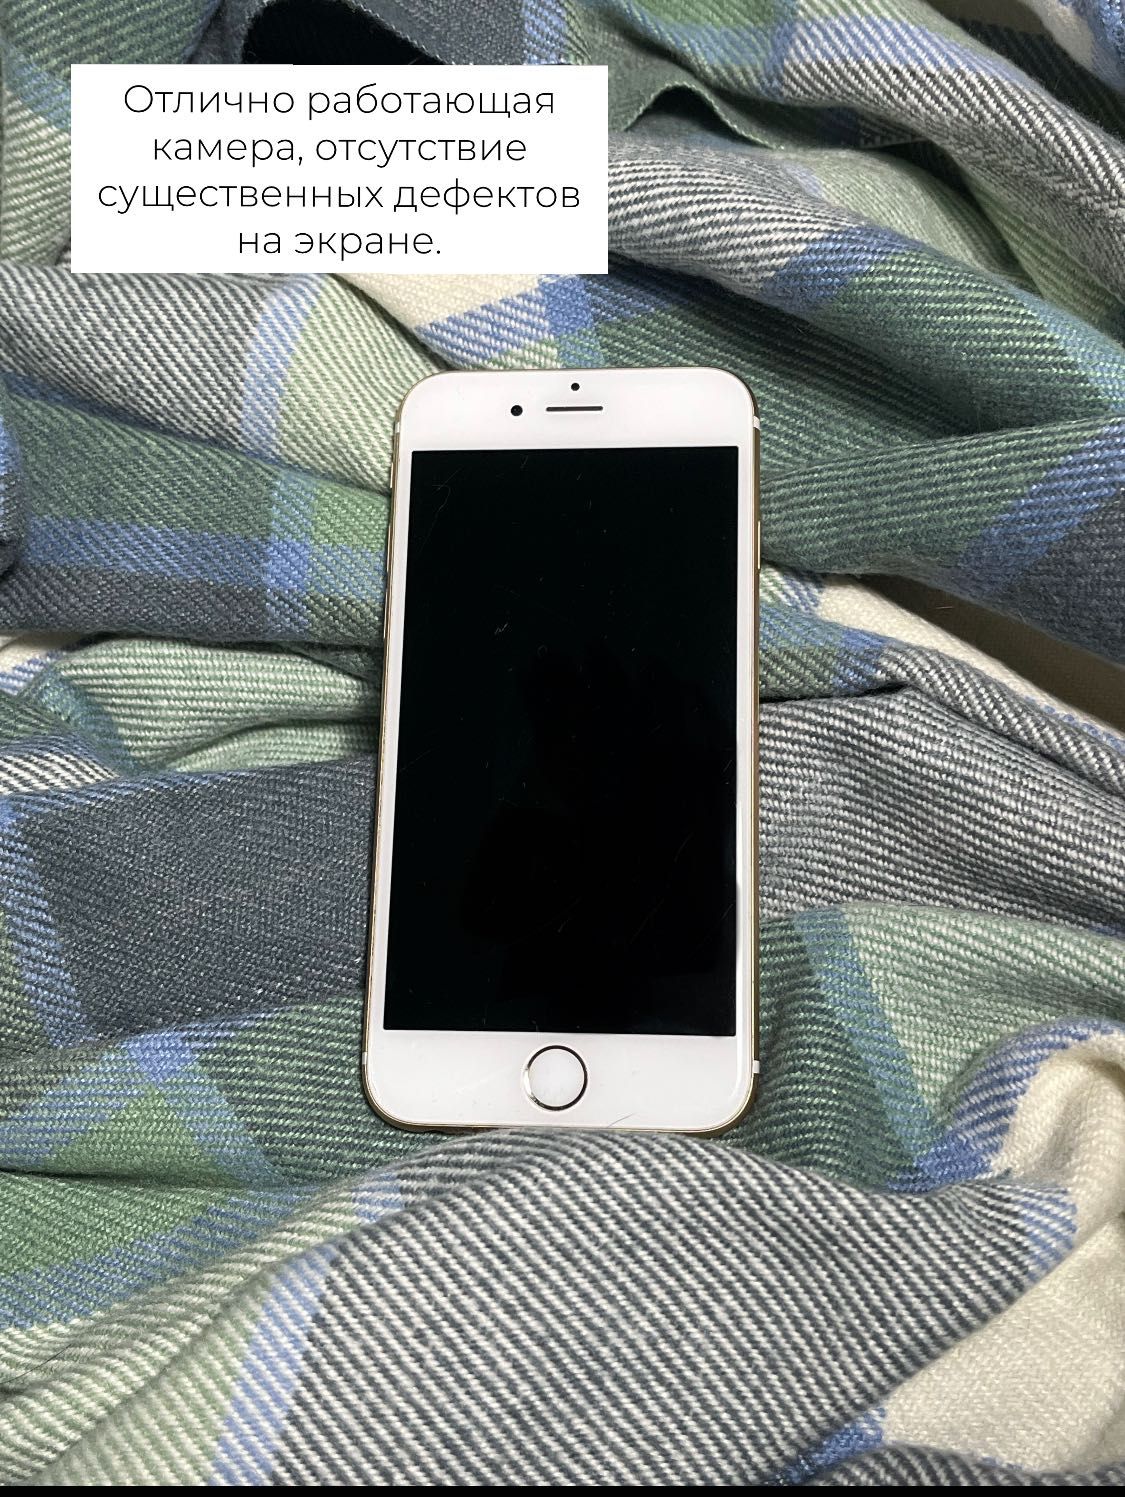 Айфон iPhone 6 s в золотом цвете